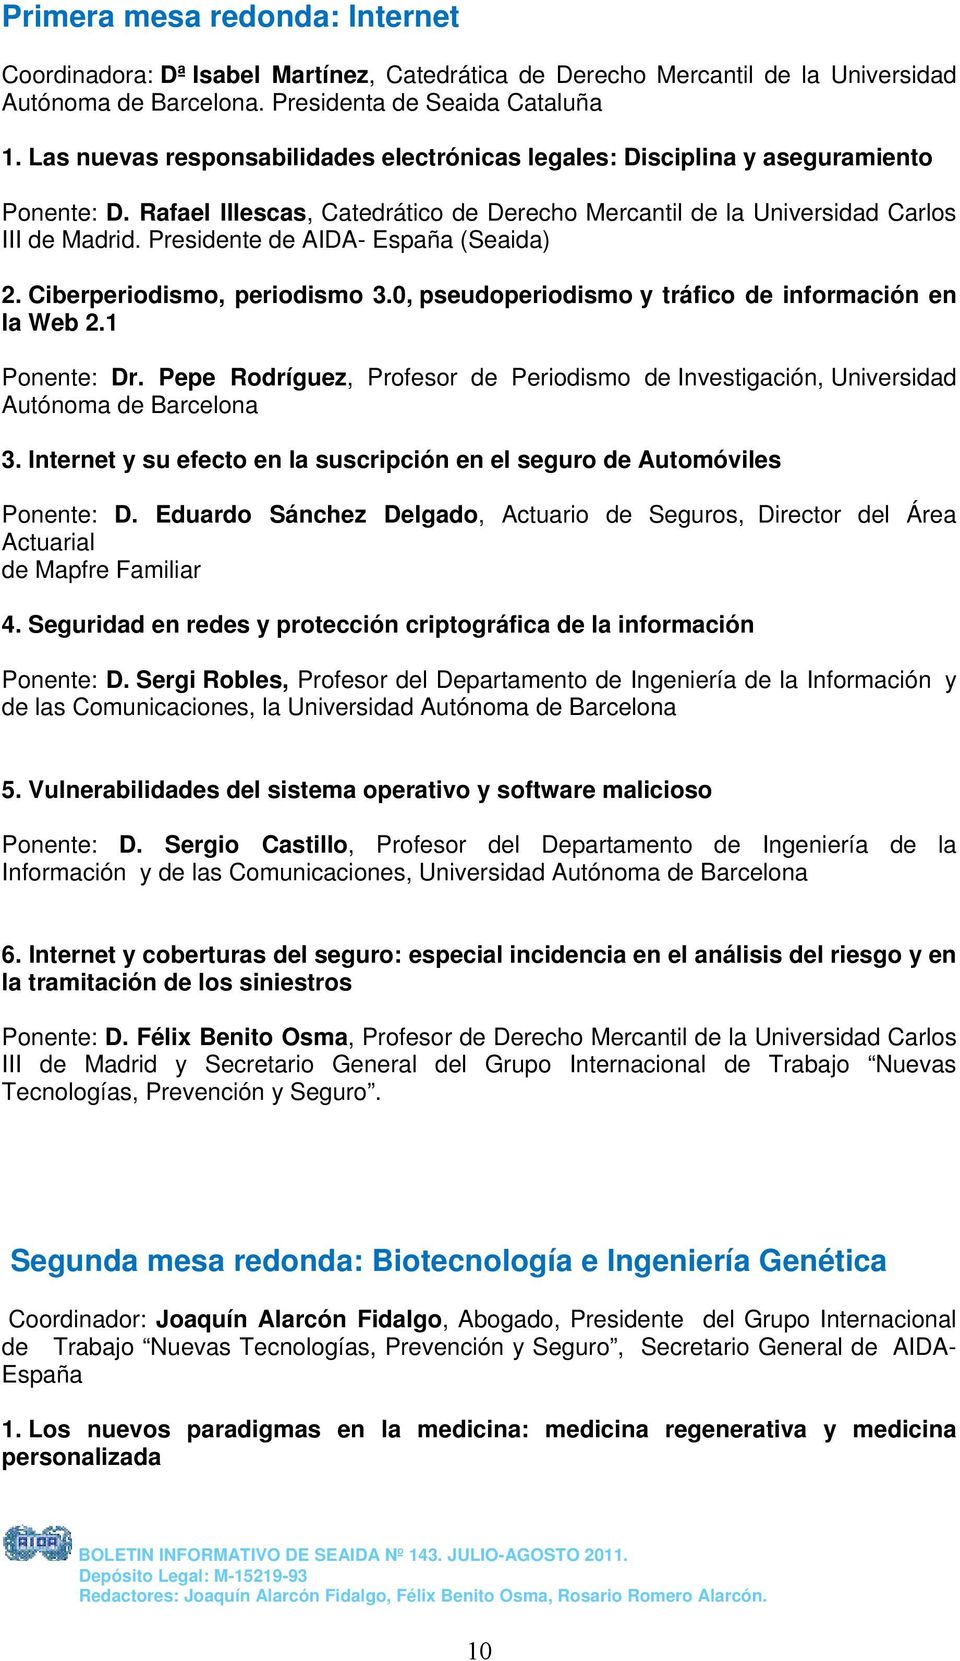 Presidente de AIDA- España (Seaida) 2. Ciberperiodismo, periodismo 3.0, pseudoperiodismo y tráfico de información en la Web 2.1 Ponente: Dr.